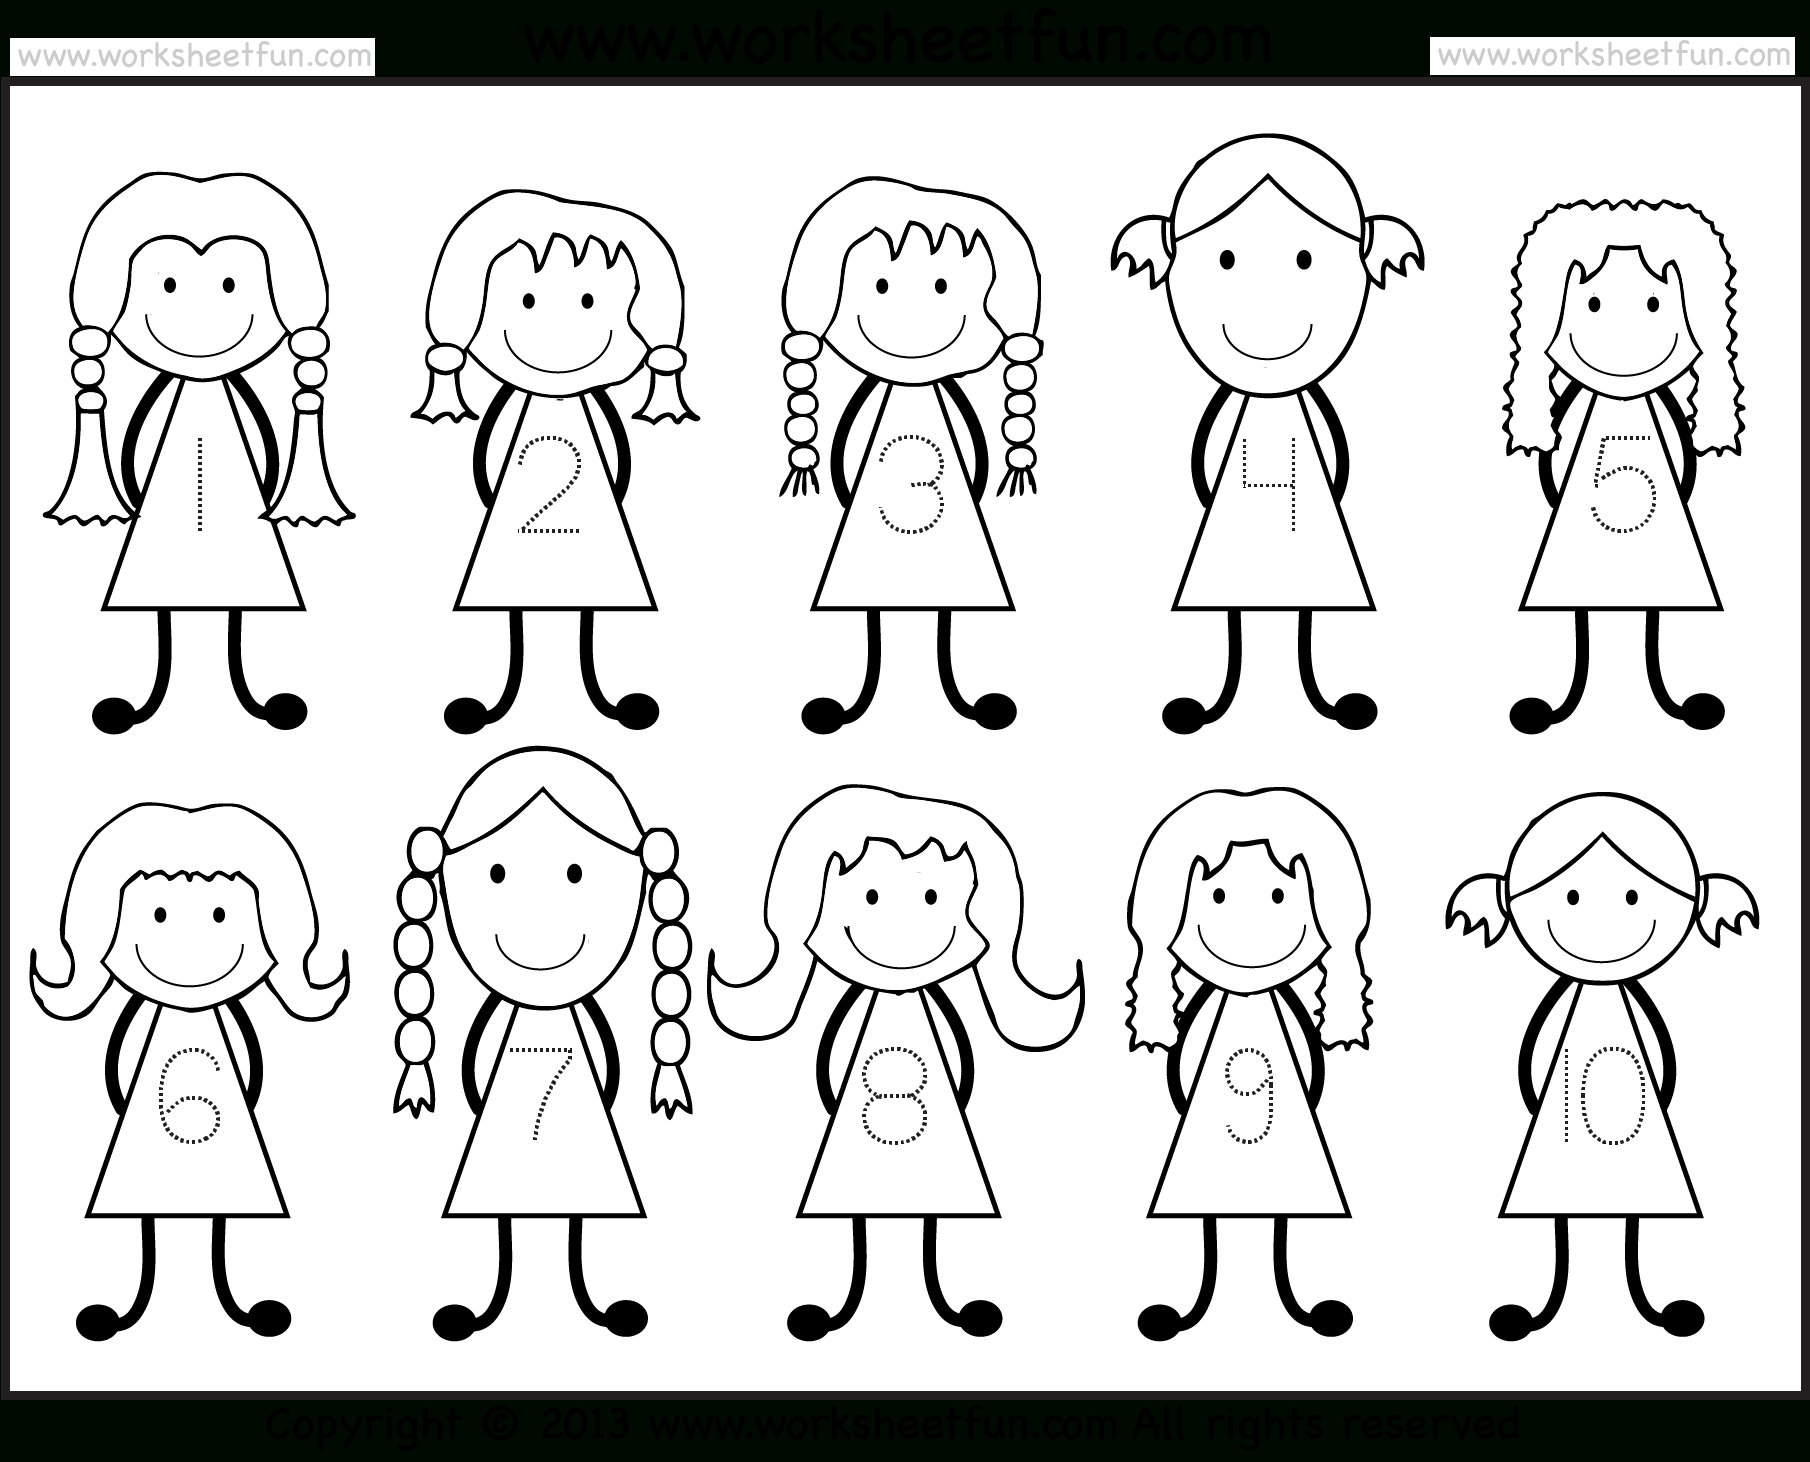 Number Tracing -1-10 – Worksheet / Free Printable Worksheets | Printable Worksheets For Preschoolers On Numbers 1 10